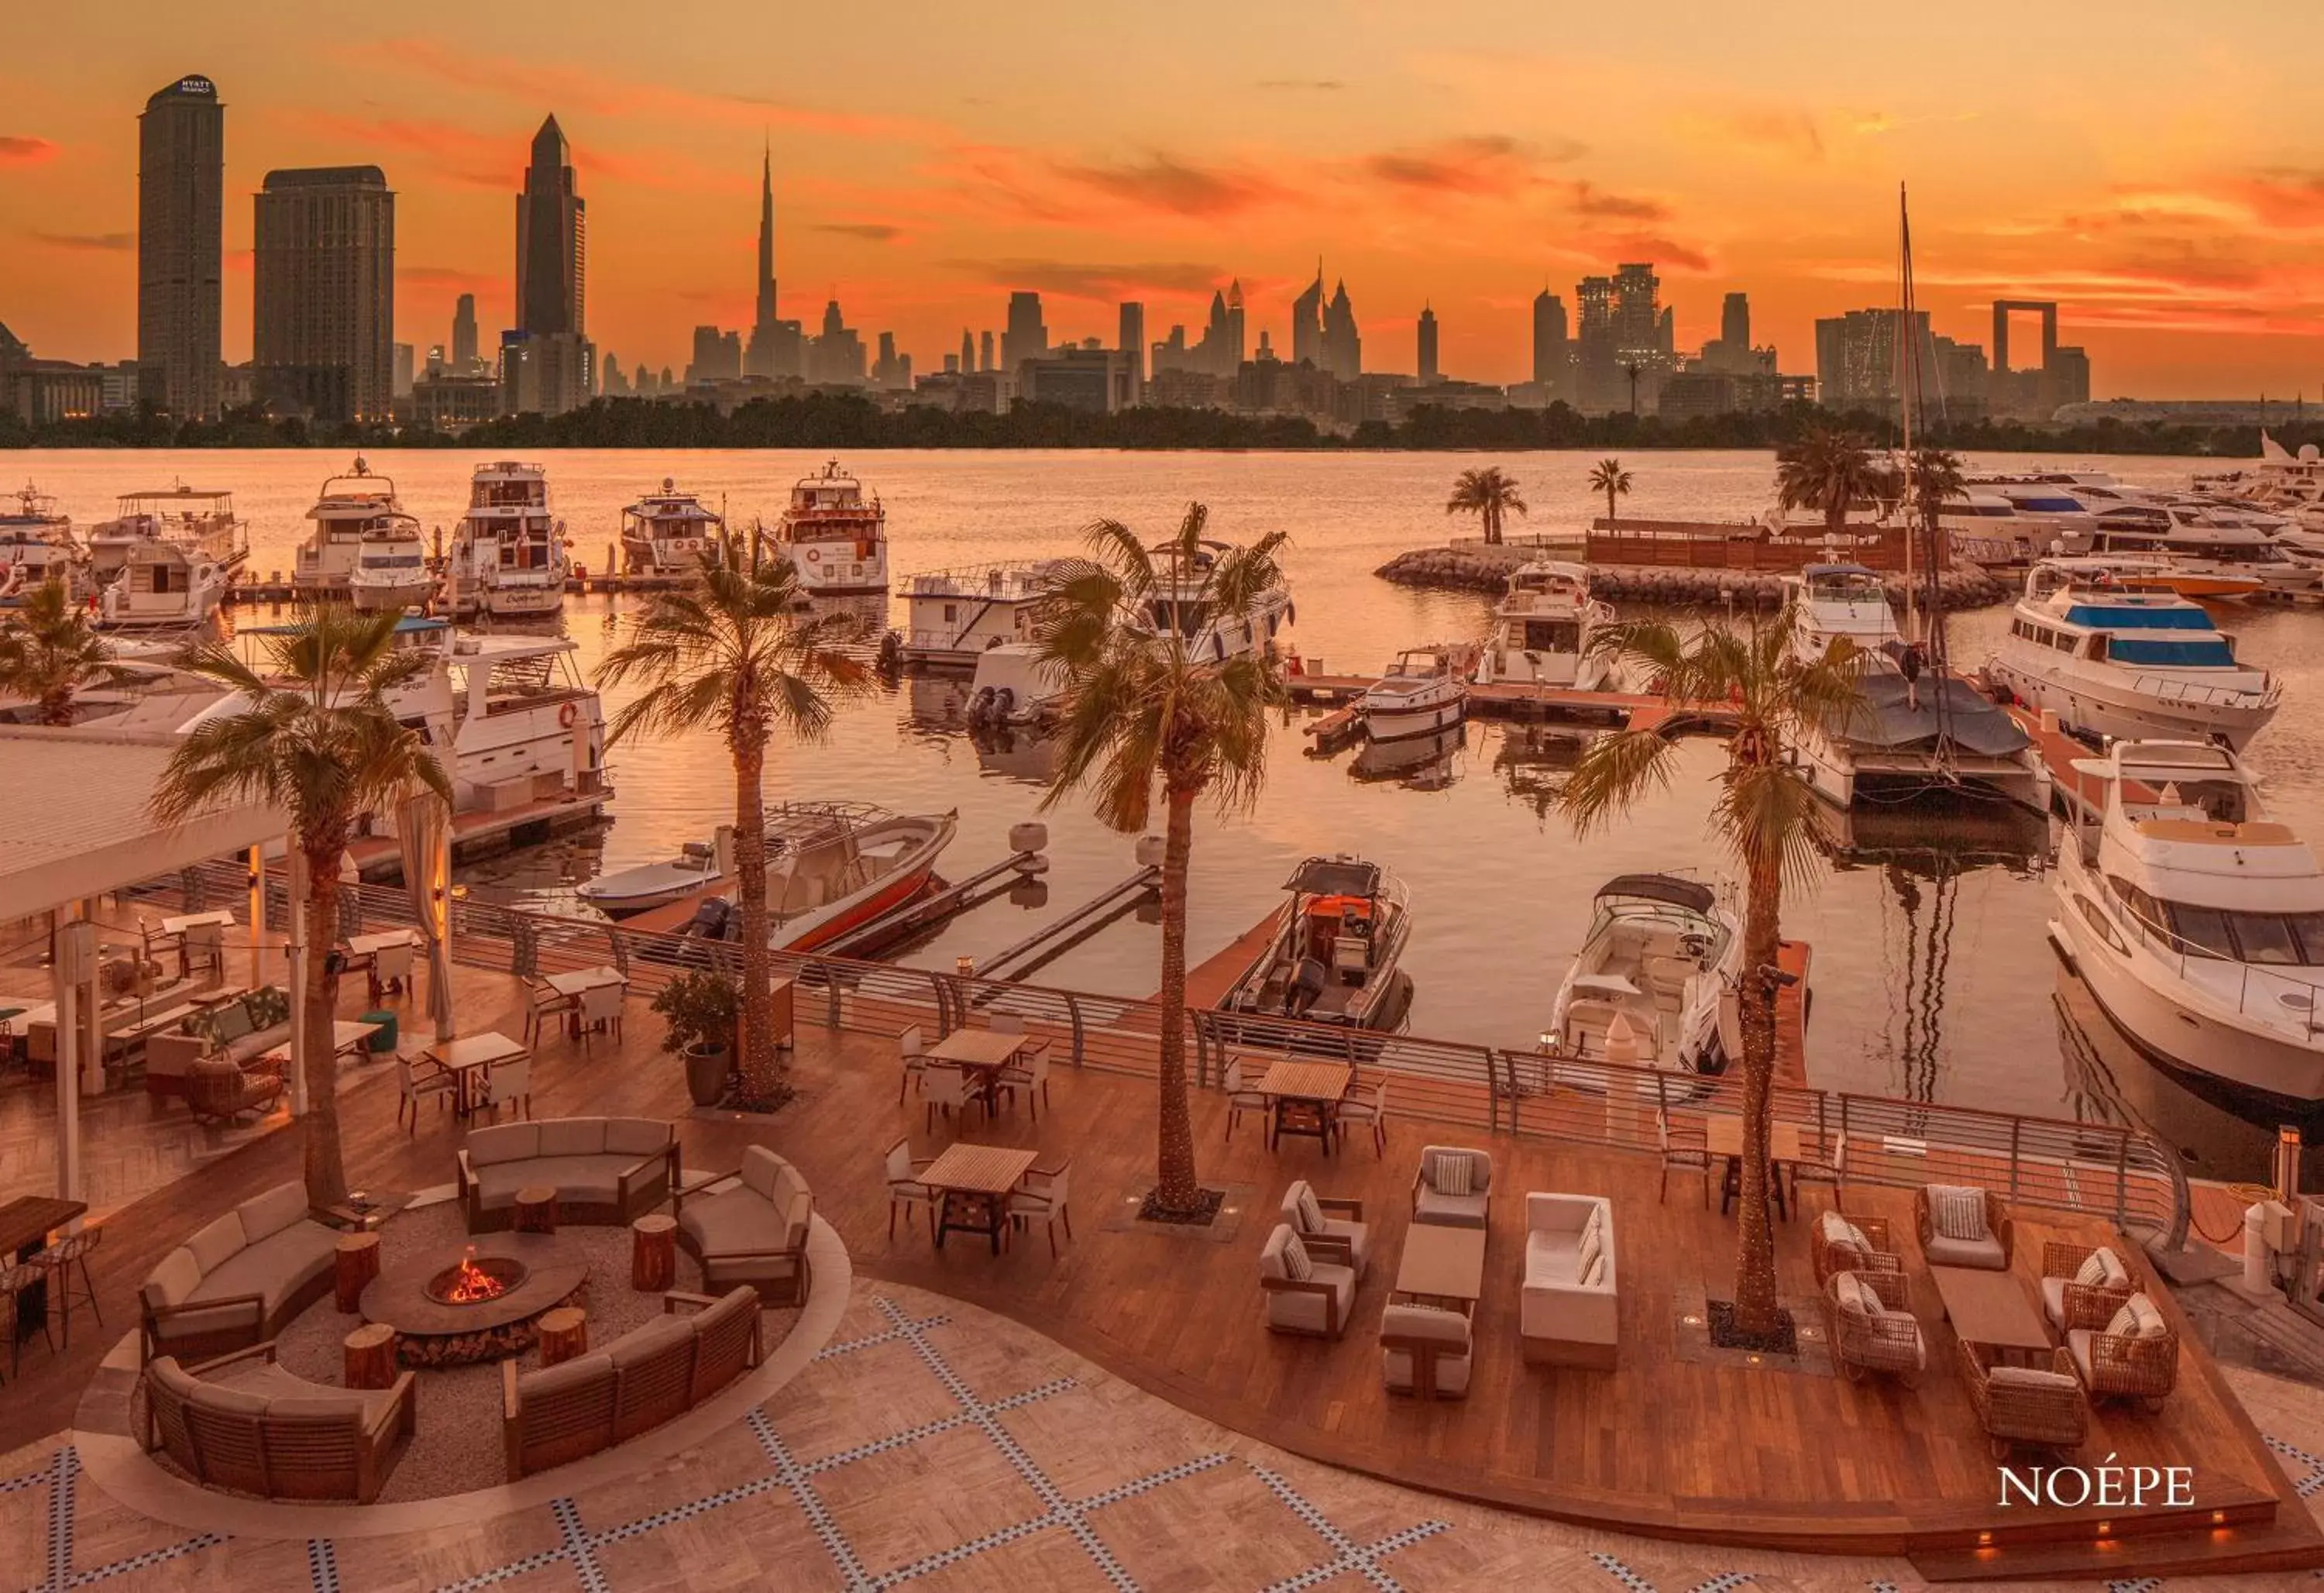 Restaurant/places to eat in Park Hyatt Dubai